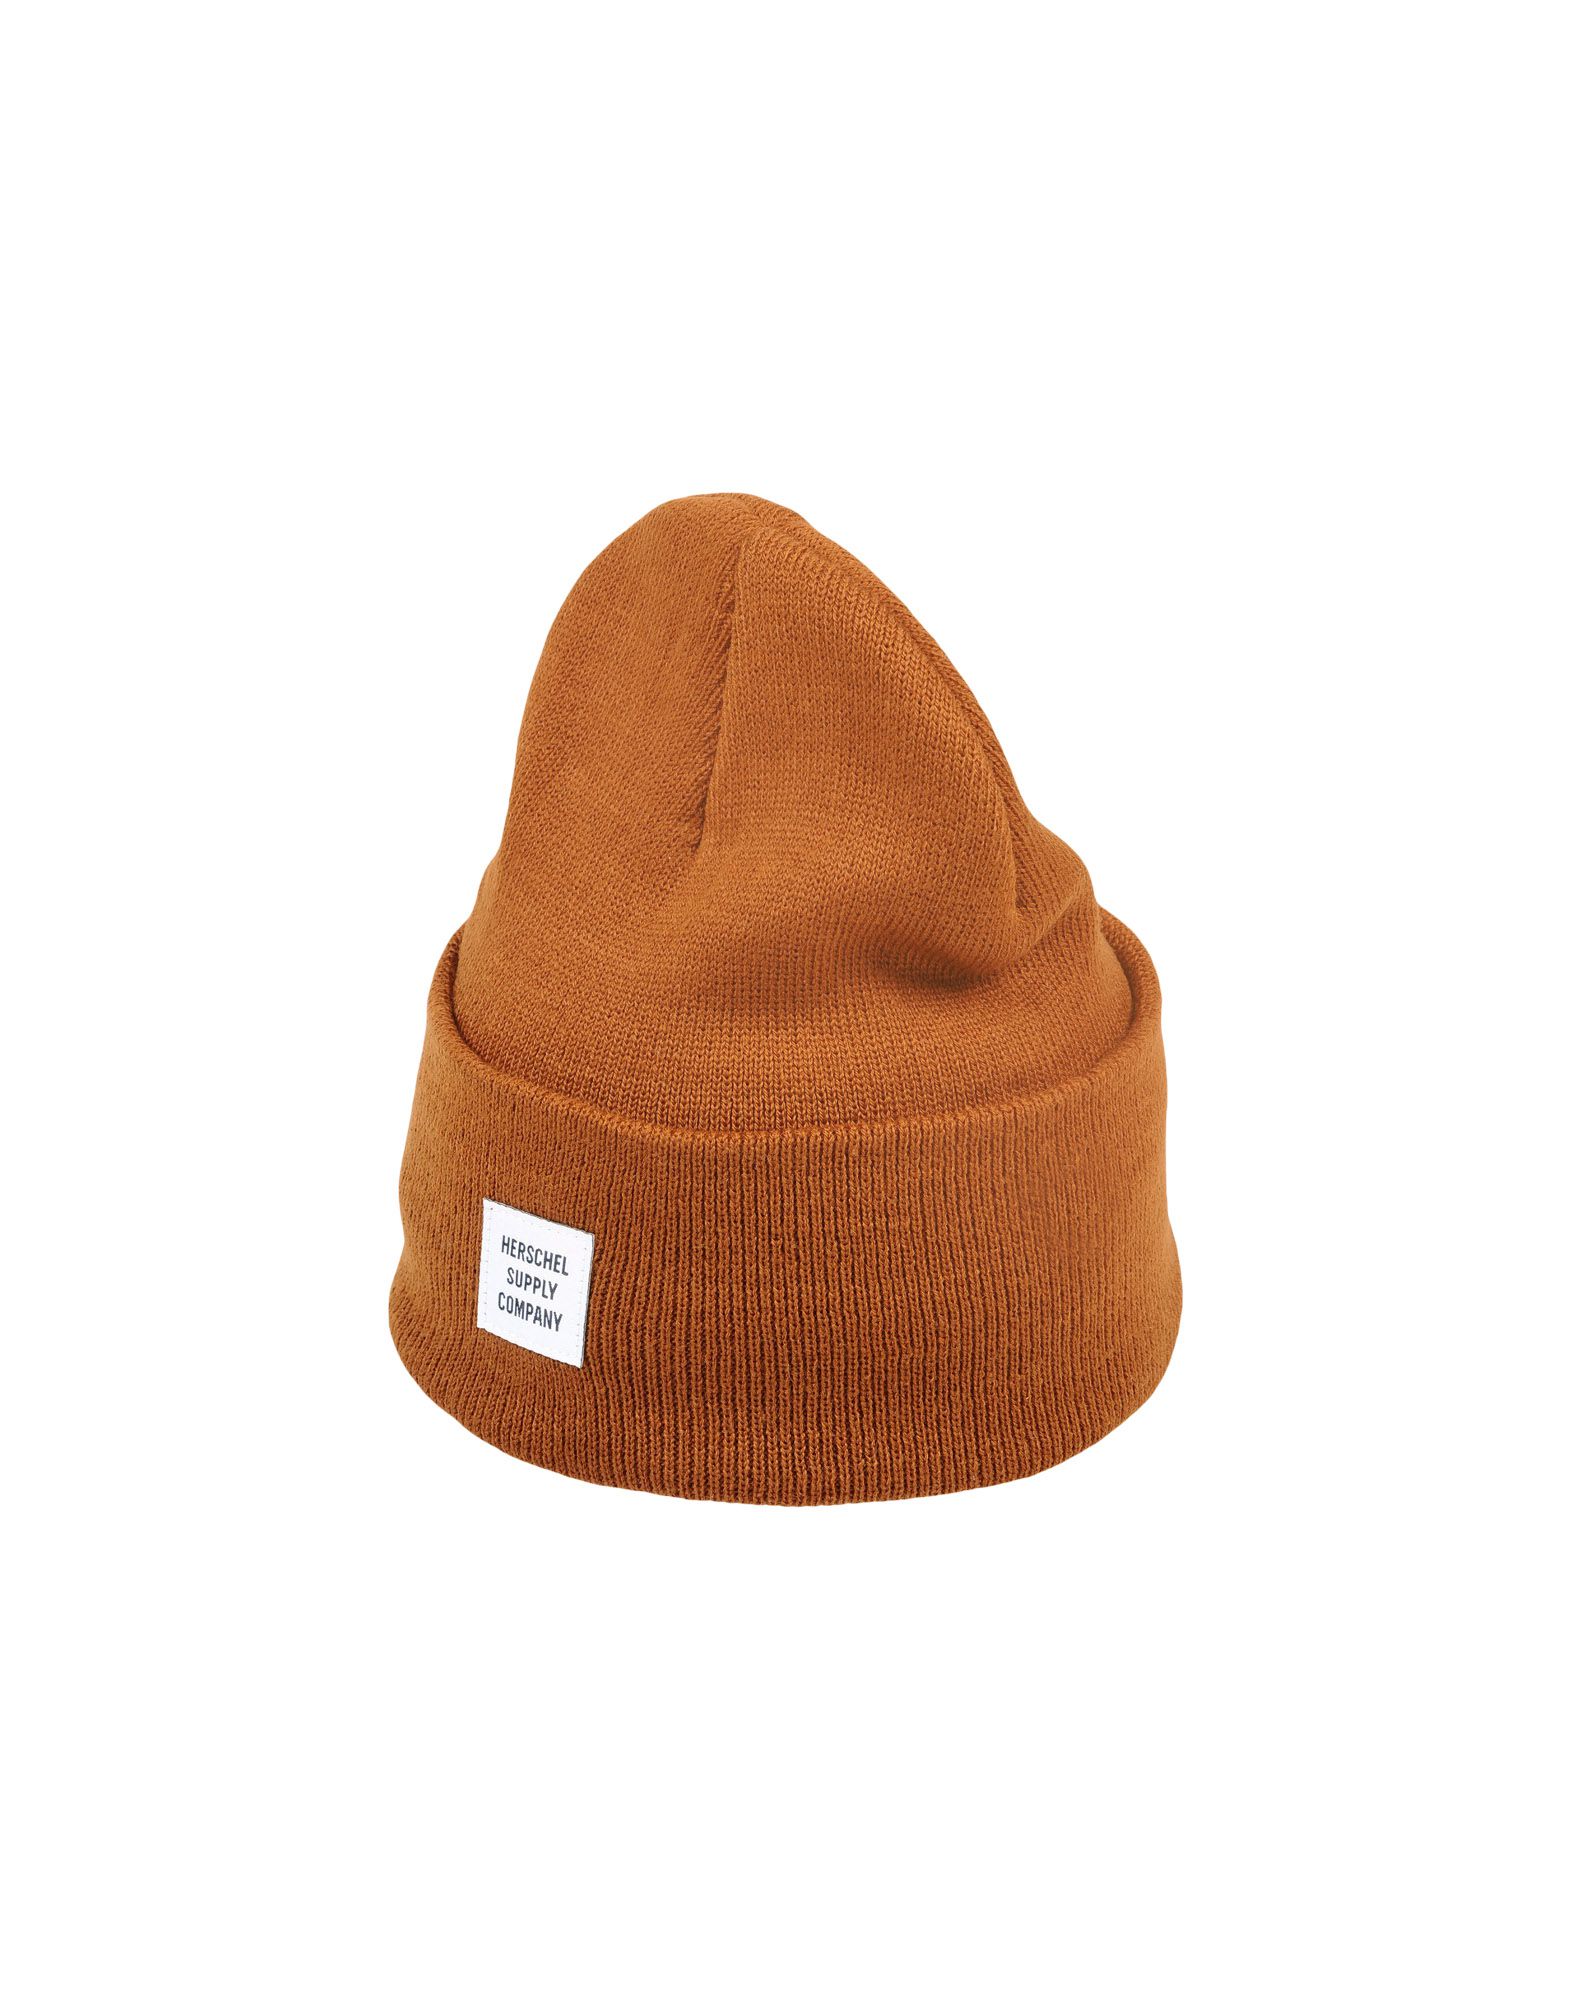 《送料無料》HERSCHEL SUPPLY CO. Unisex 帽子 ブラウン one size アクリル 100%